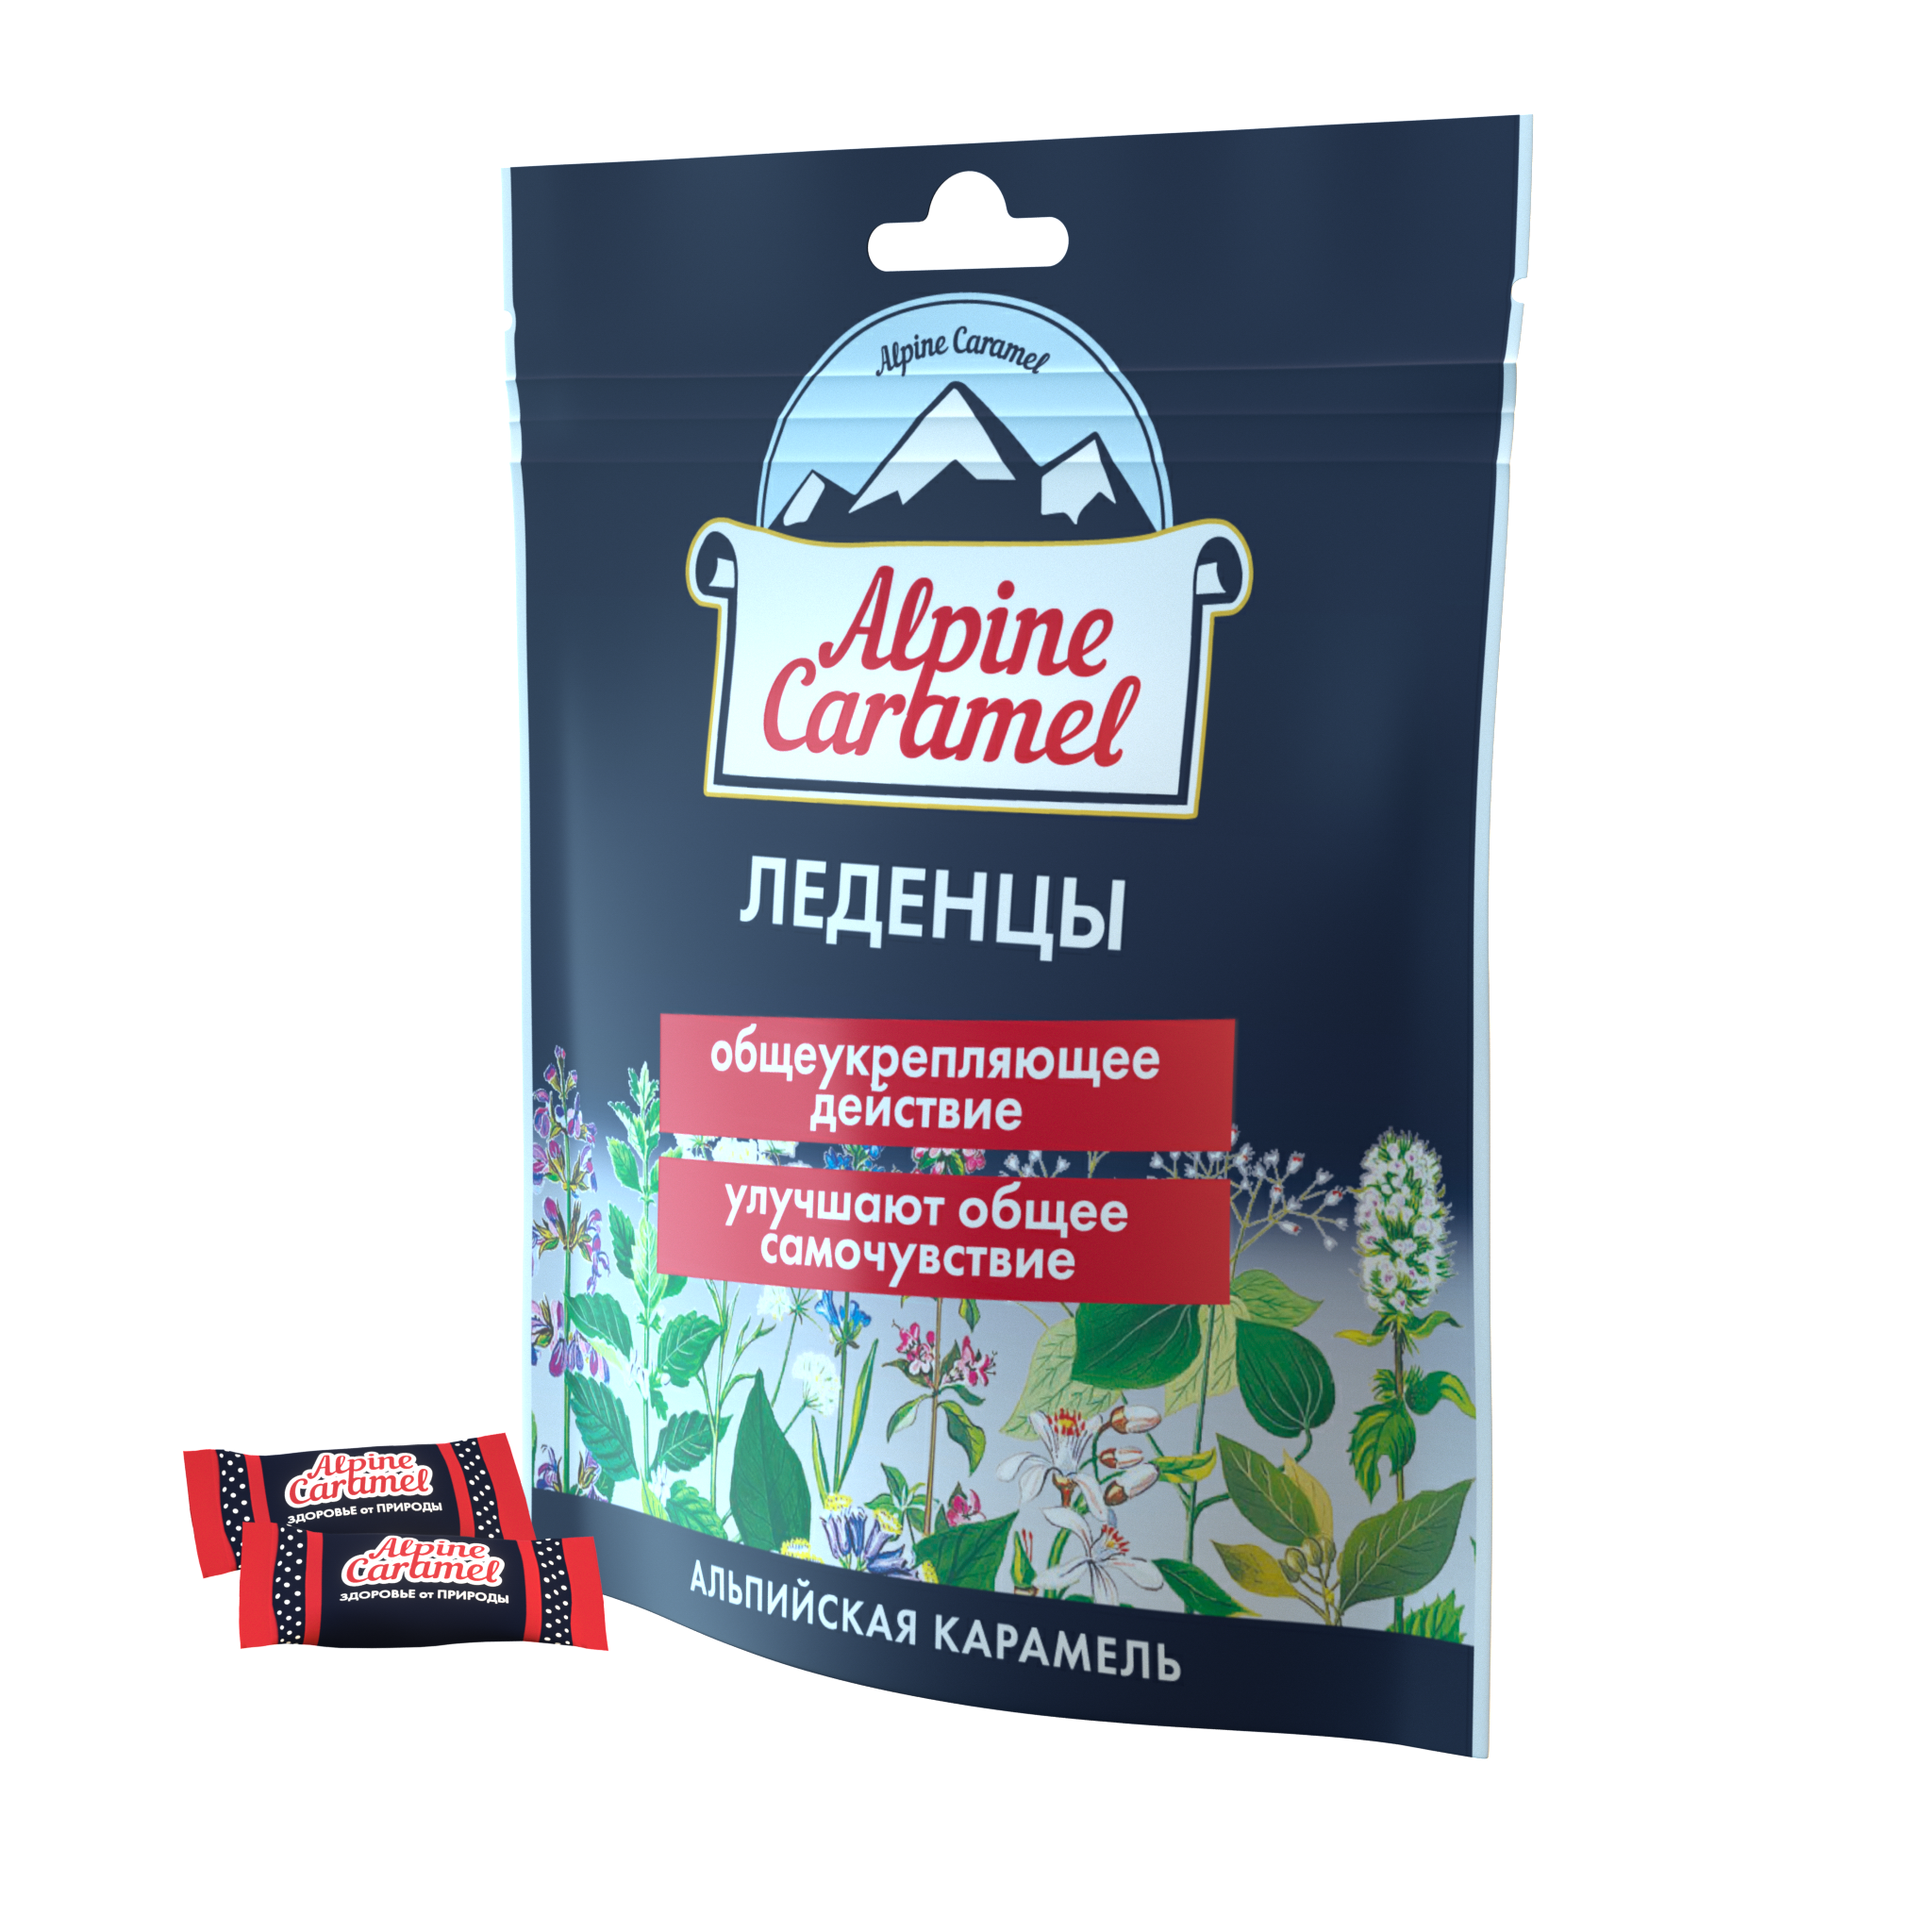 Alpine Caramel Альпийская Карамель леденцы, 75 г альпийская карамель леденцы 75 г 1 шт вишня